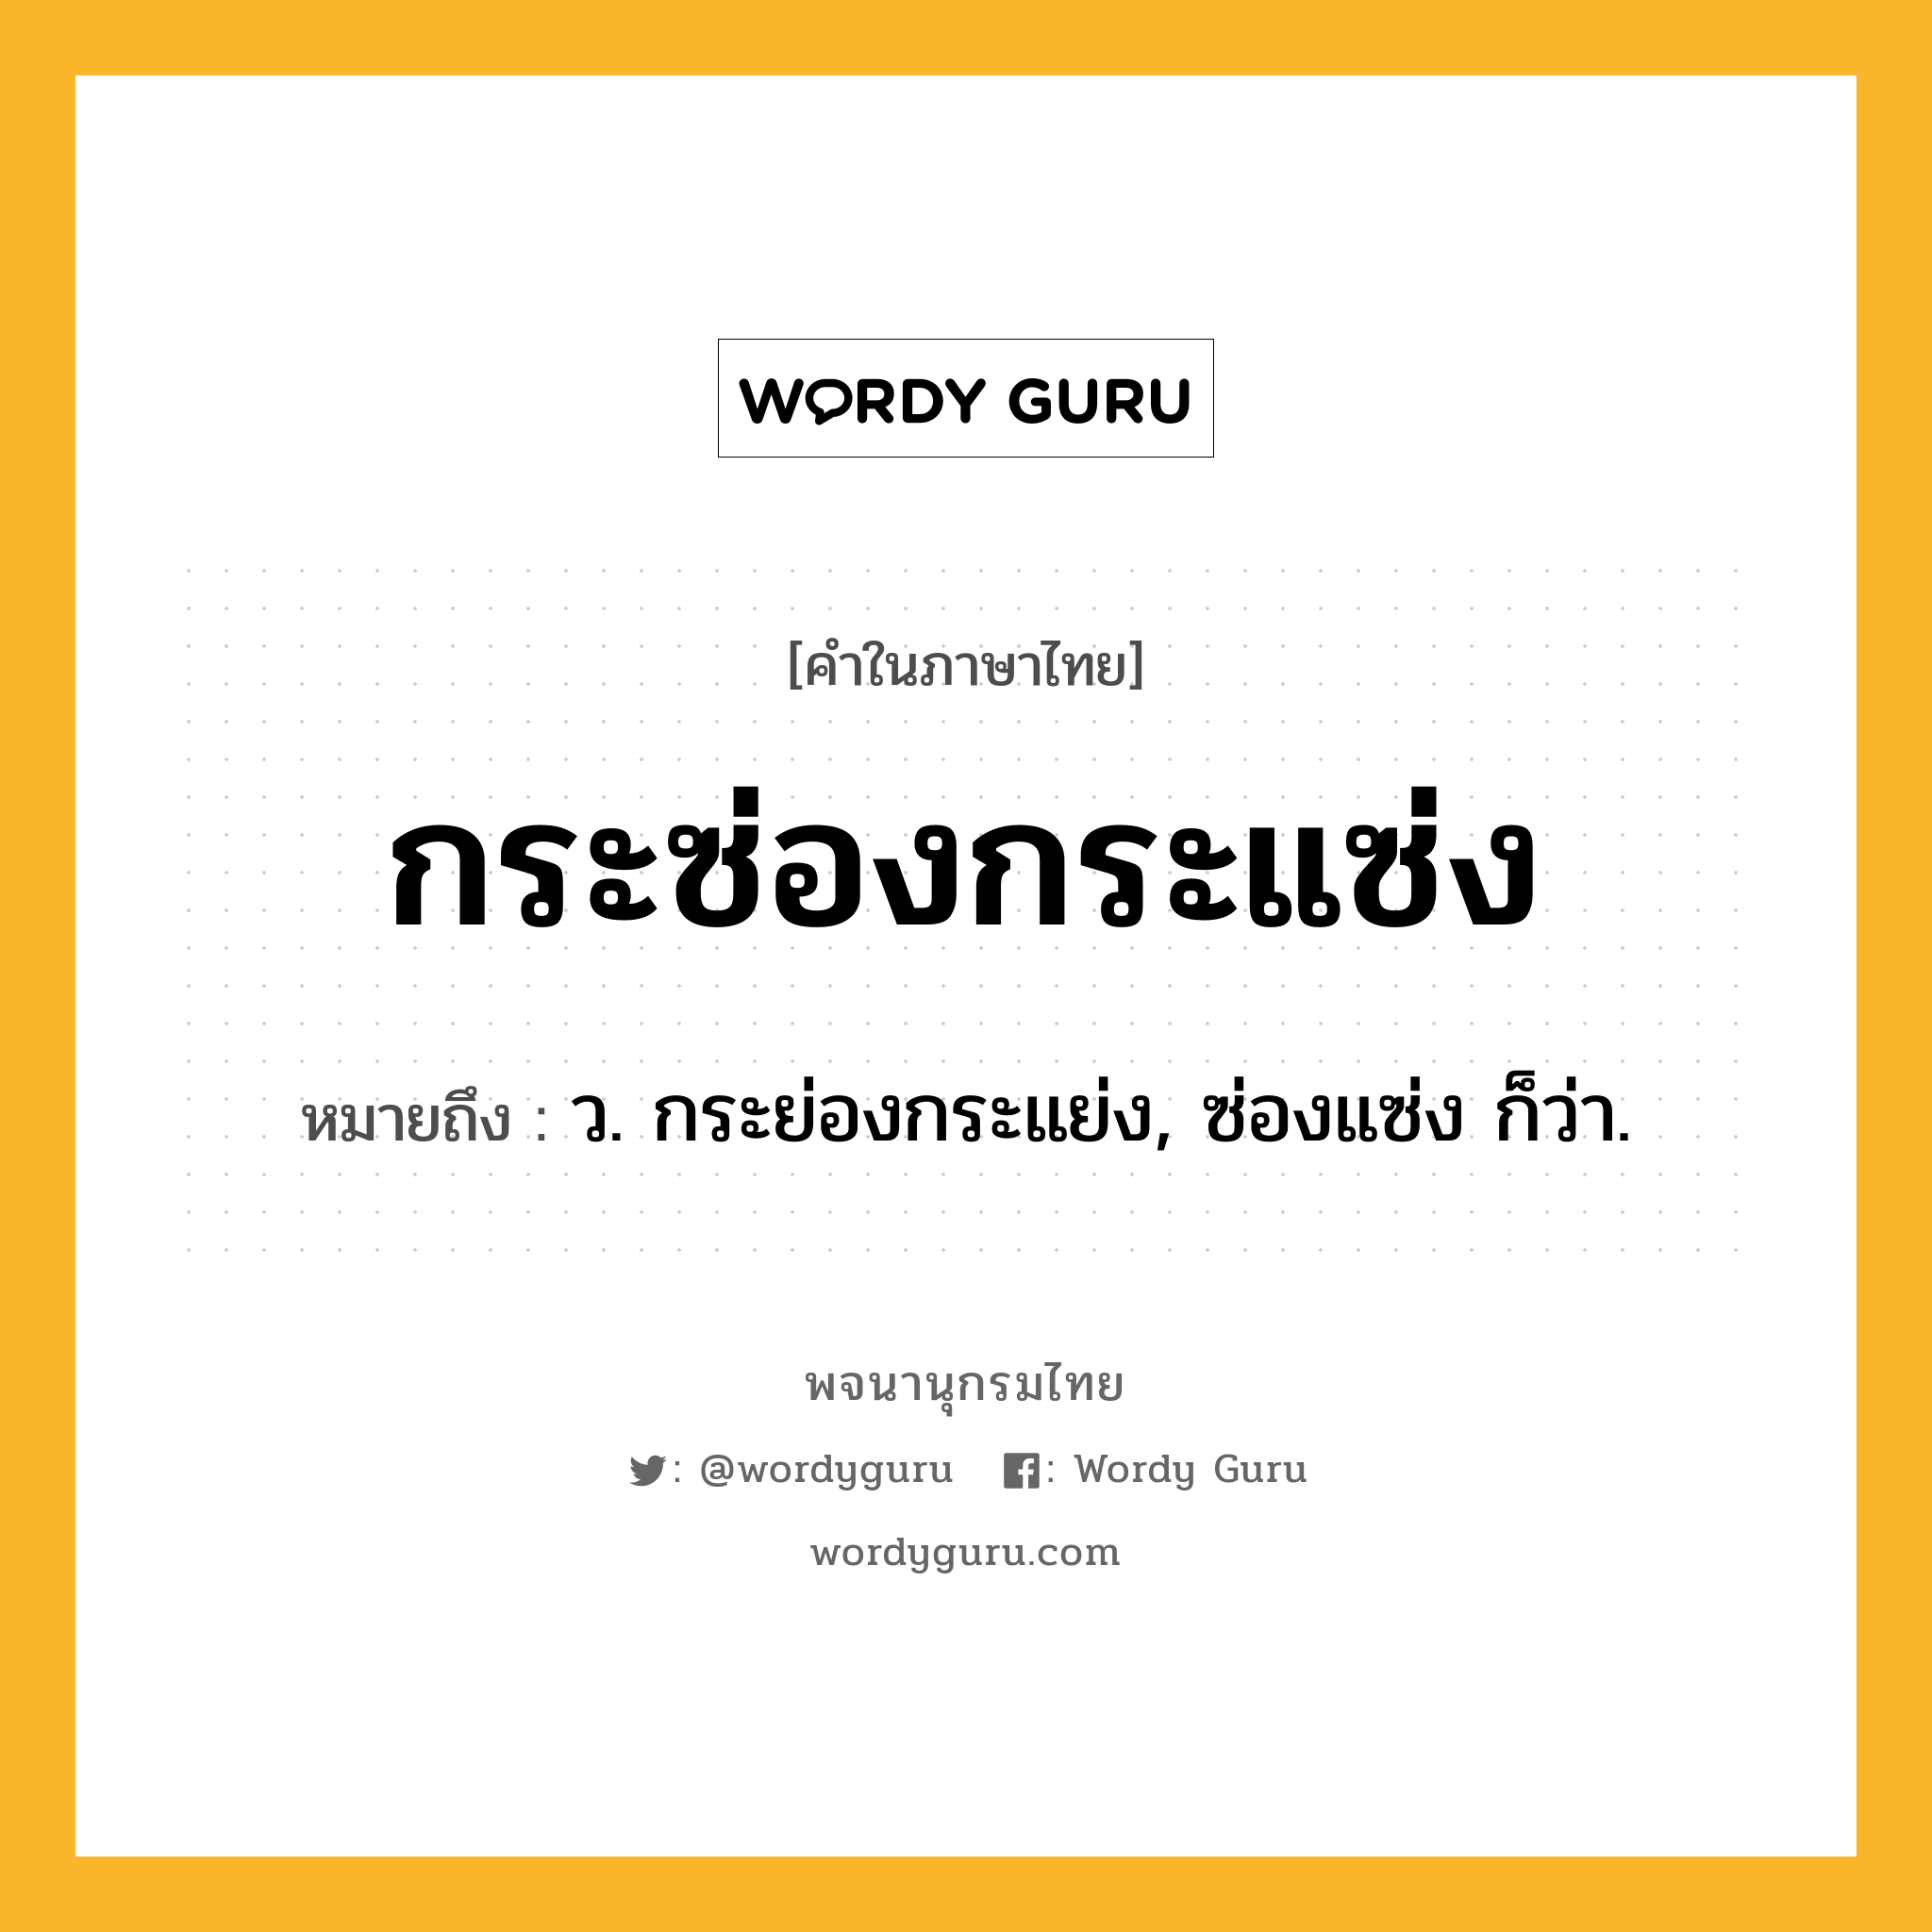 กระซ่องกระแซ่ง ความหมาย หมายถึงอะไร?, คำในภาษาไทย กระซ่องกระแซ่ง หมายถึง ว. กระย่องกระแย่ง, ซ่องแซ่ง ก็ว่า.